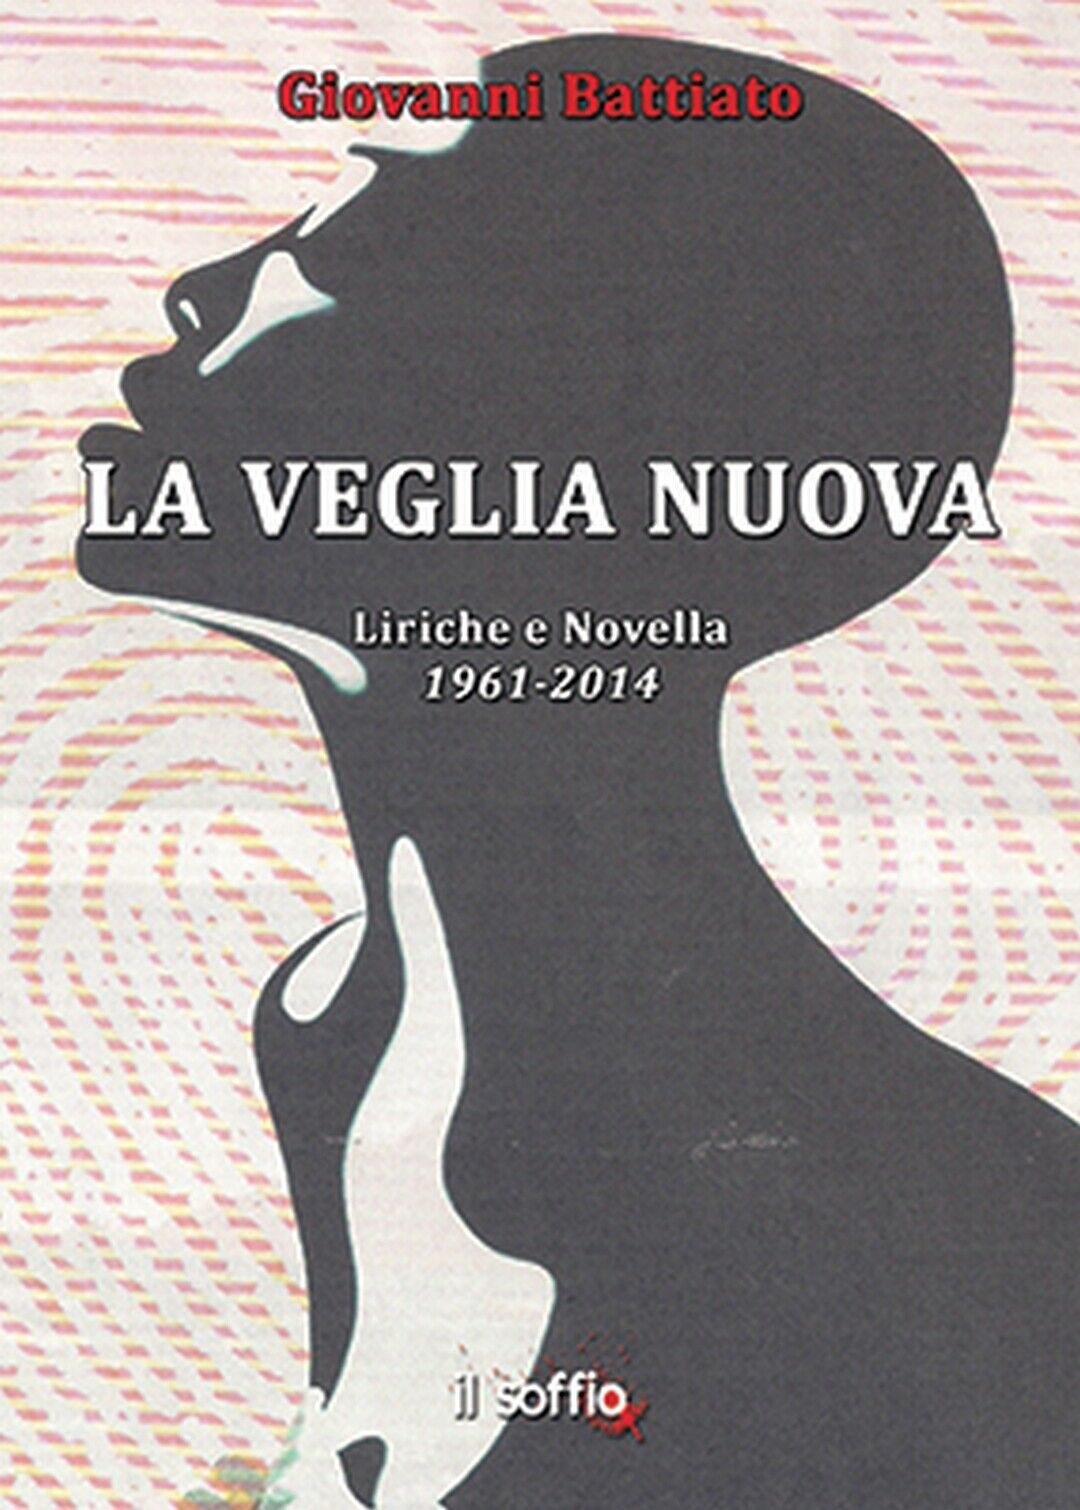 La veglia nuova. Liriche e Novella 1961-2014, Giovanni Battiato,  Il Soffio Ed.